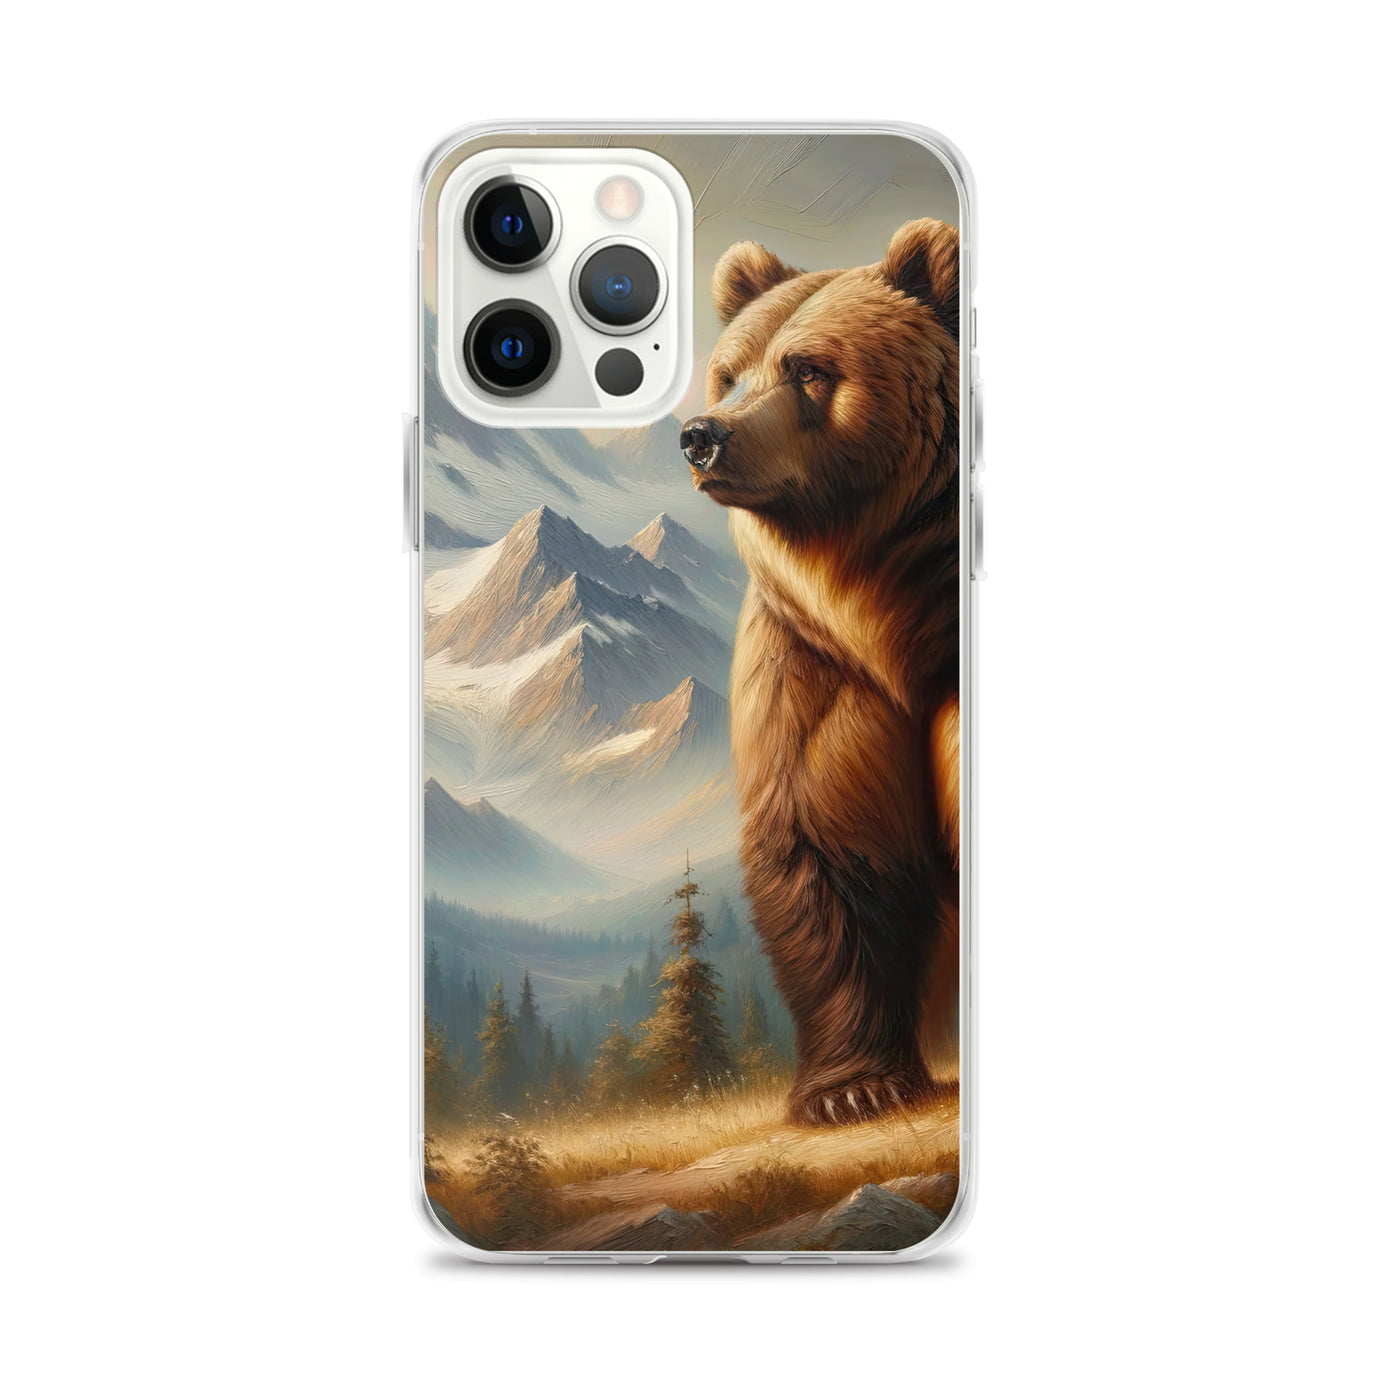 Ölgemälde eines königlichen Bären vor der majestätischen Alpenkulisse - iPhone Schutzhülle (durchsichtig) camping xxx yyy zzz iPhone 12 Pro Max